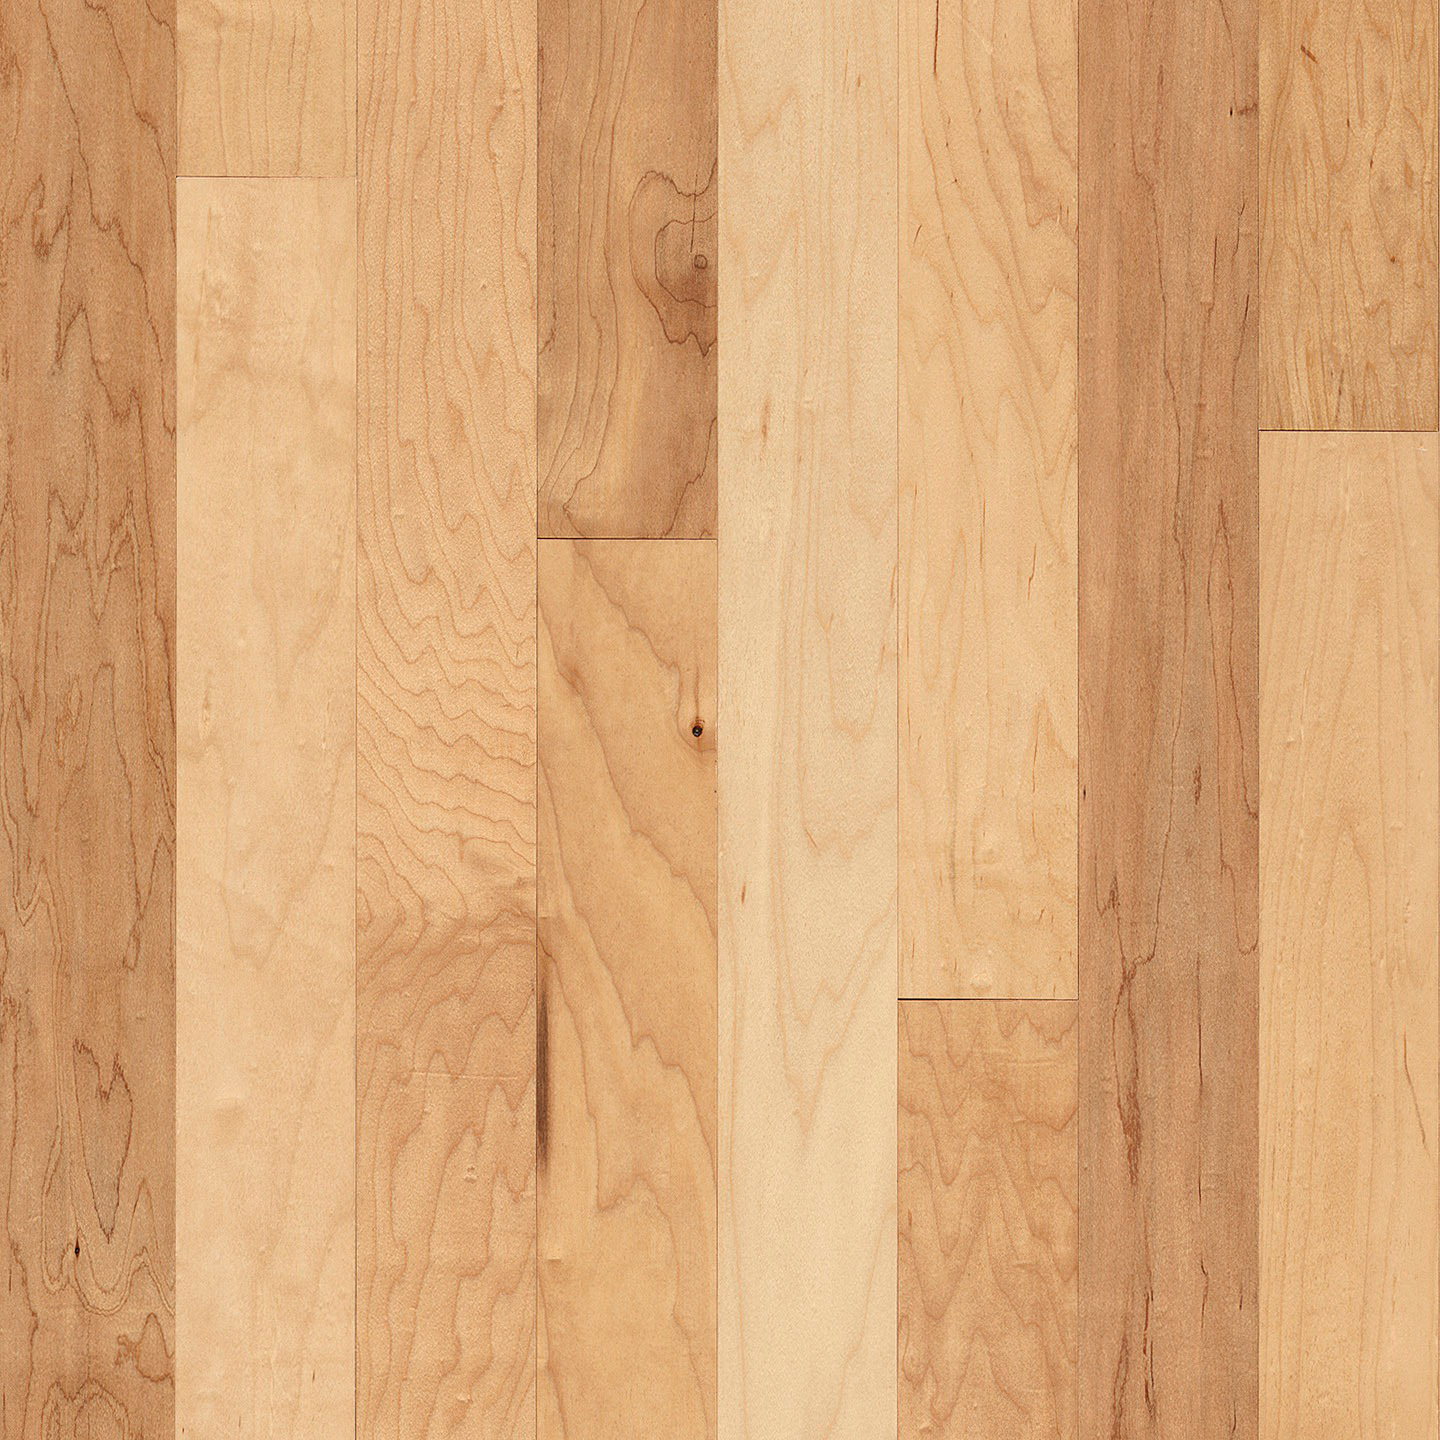 Maple Engineered Hardwood Ema00lgee, Natural Maple Engineered Hardwood Flooring